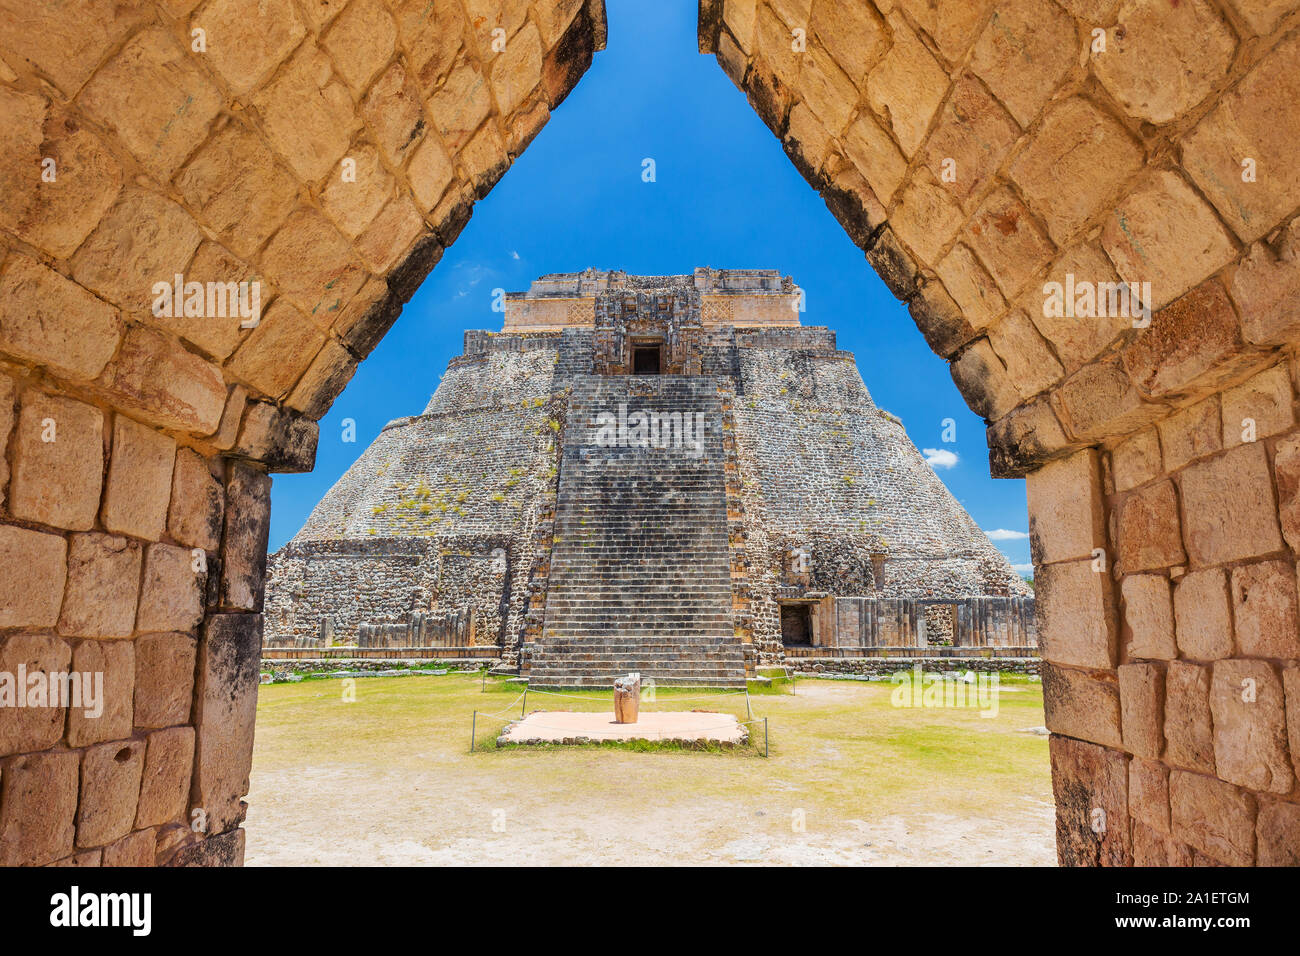 Uxmal, Messico. Piramide del mago in antiche città maya. Foto Stock